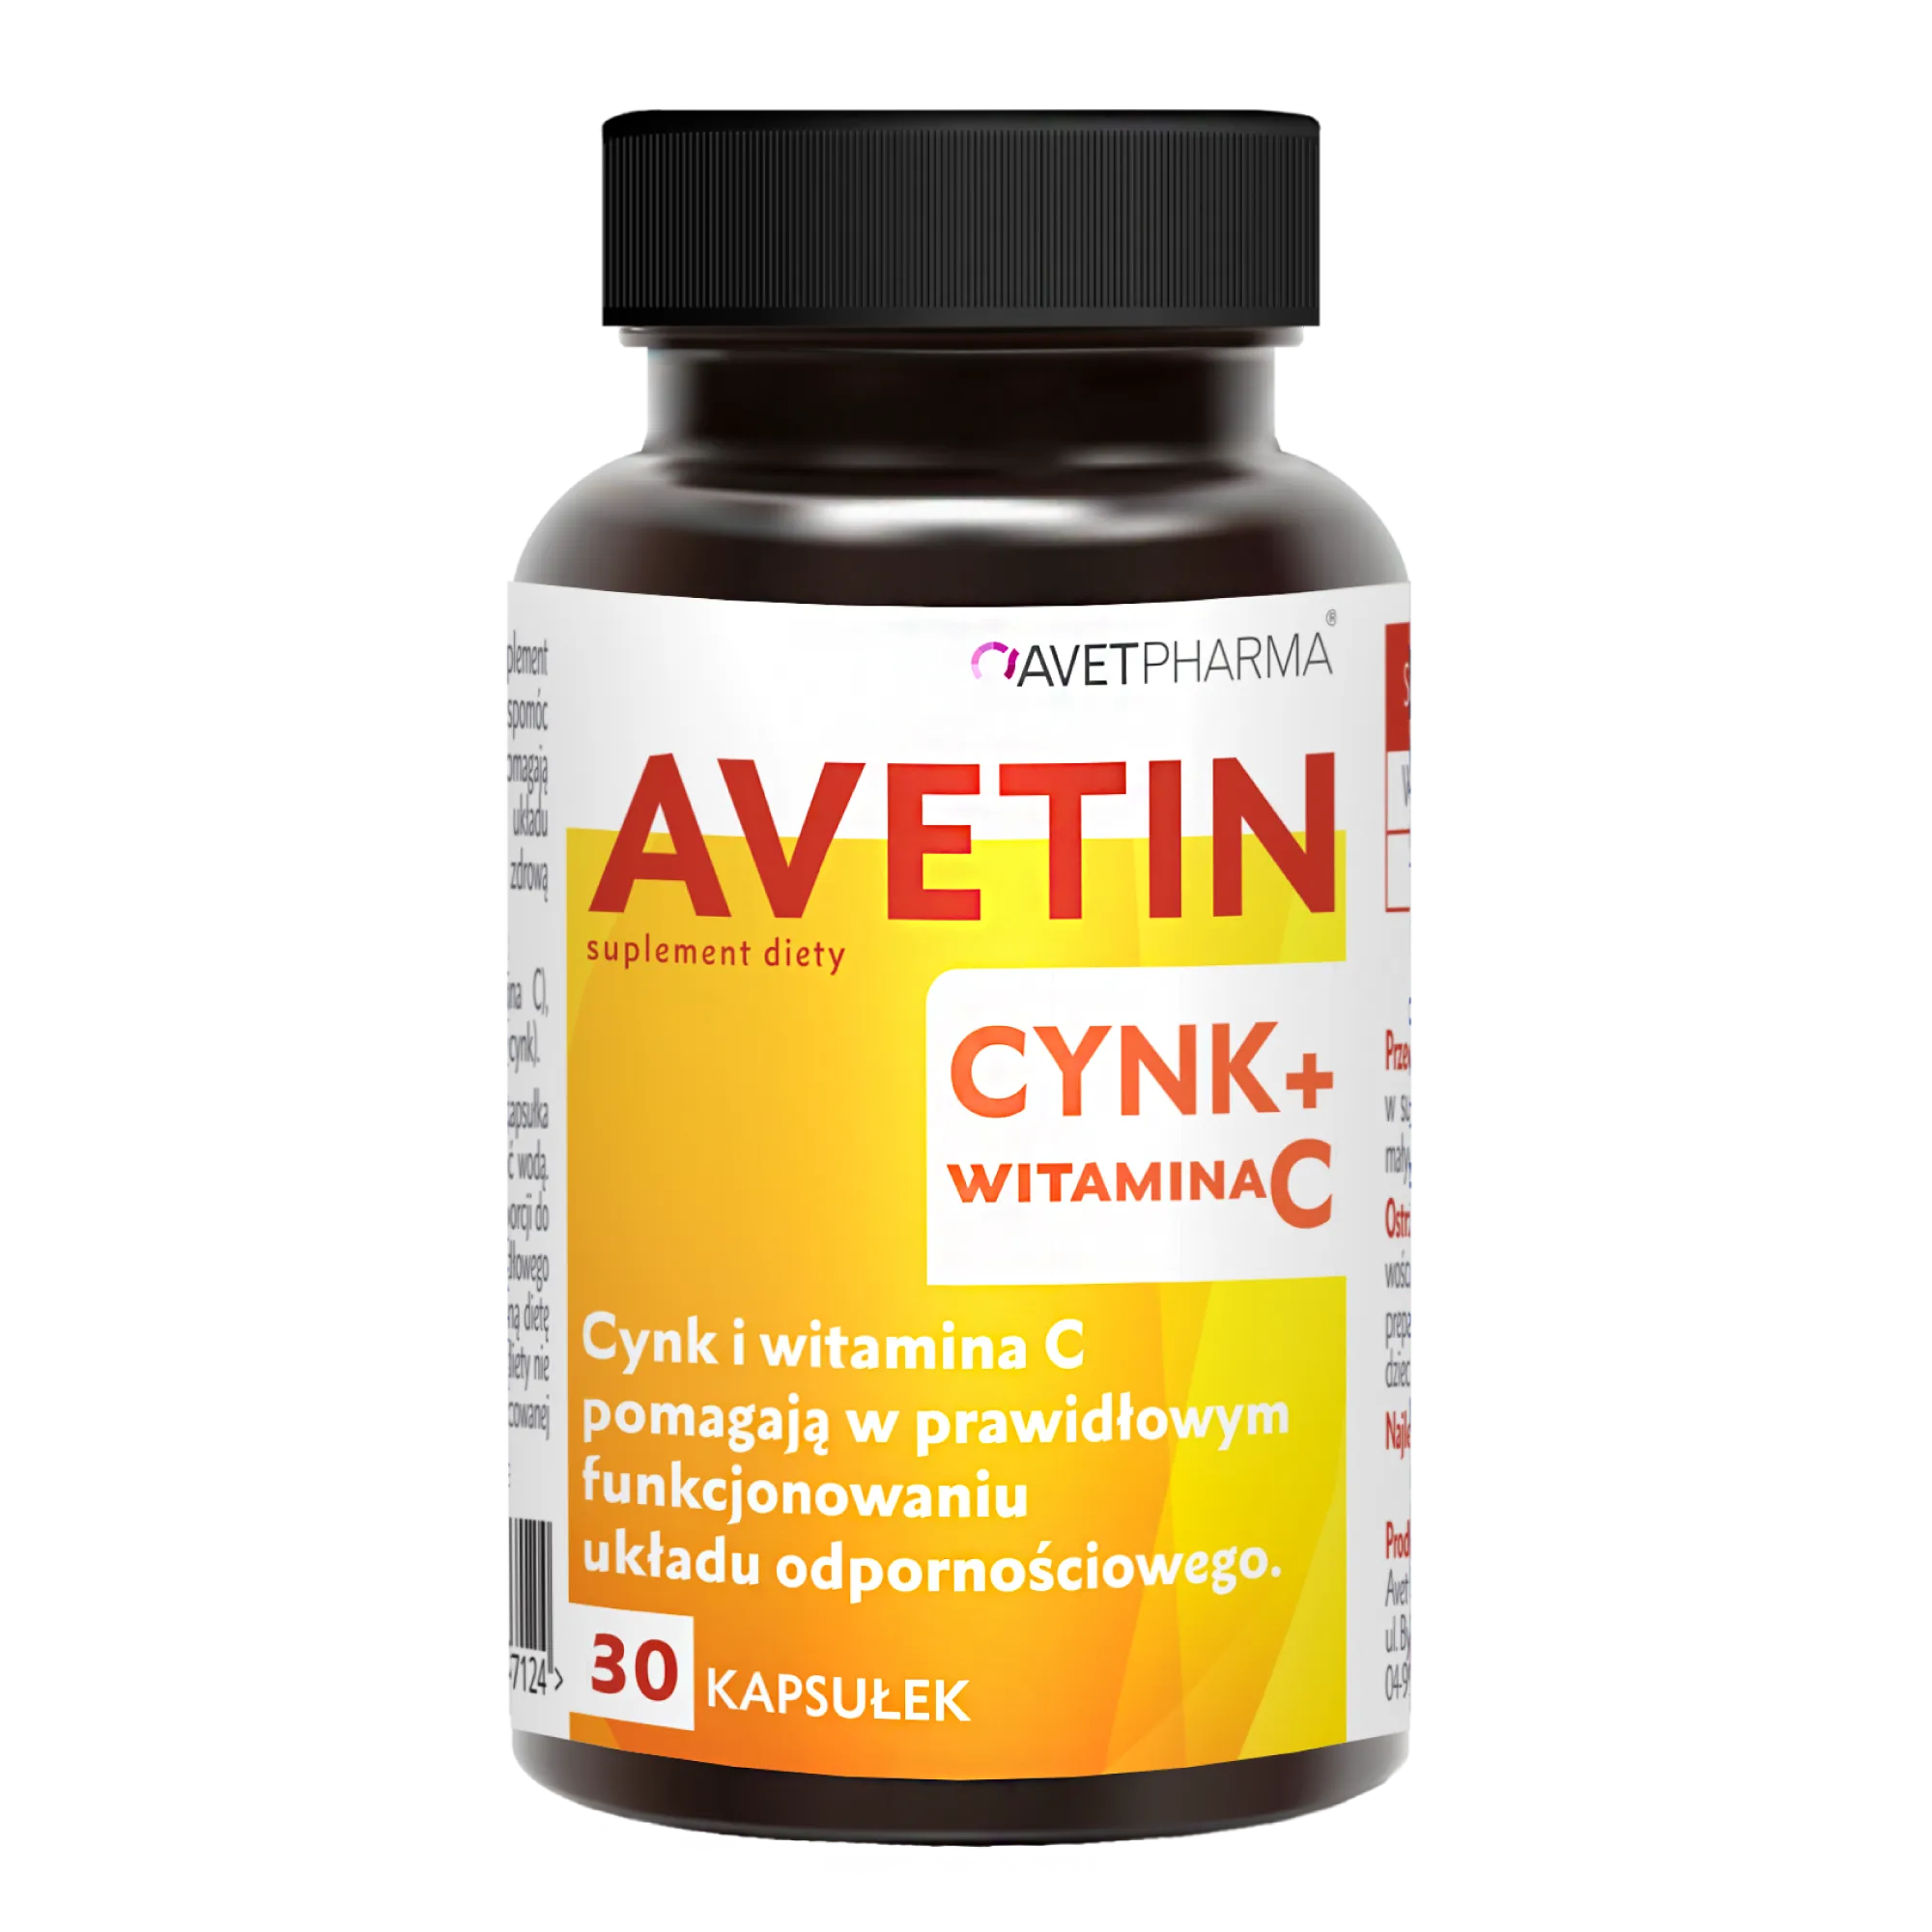 AVETIN cynk + witamina C, 30 tabletek